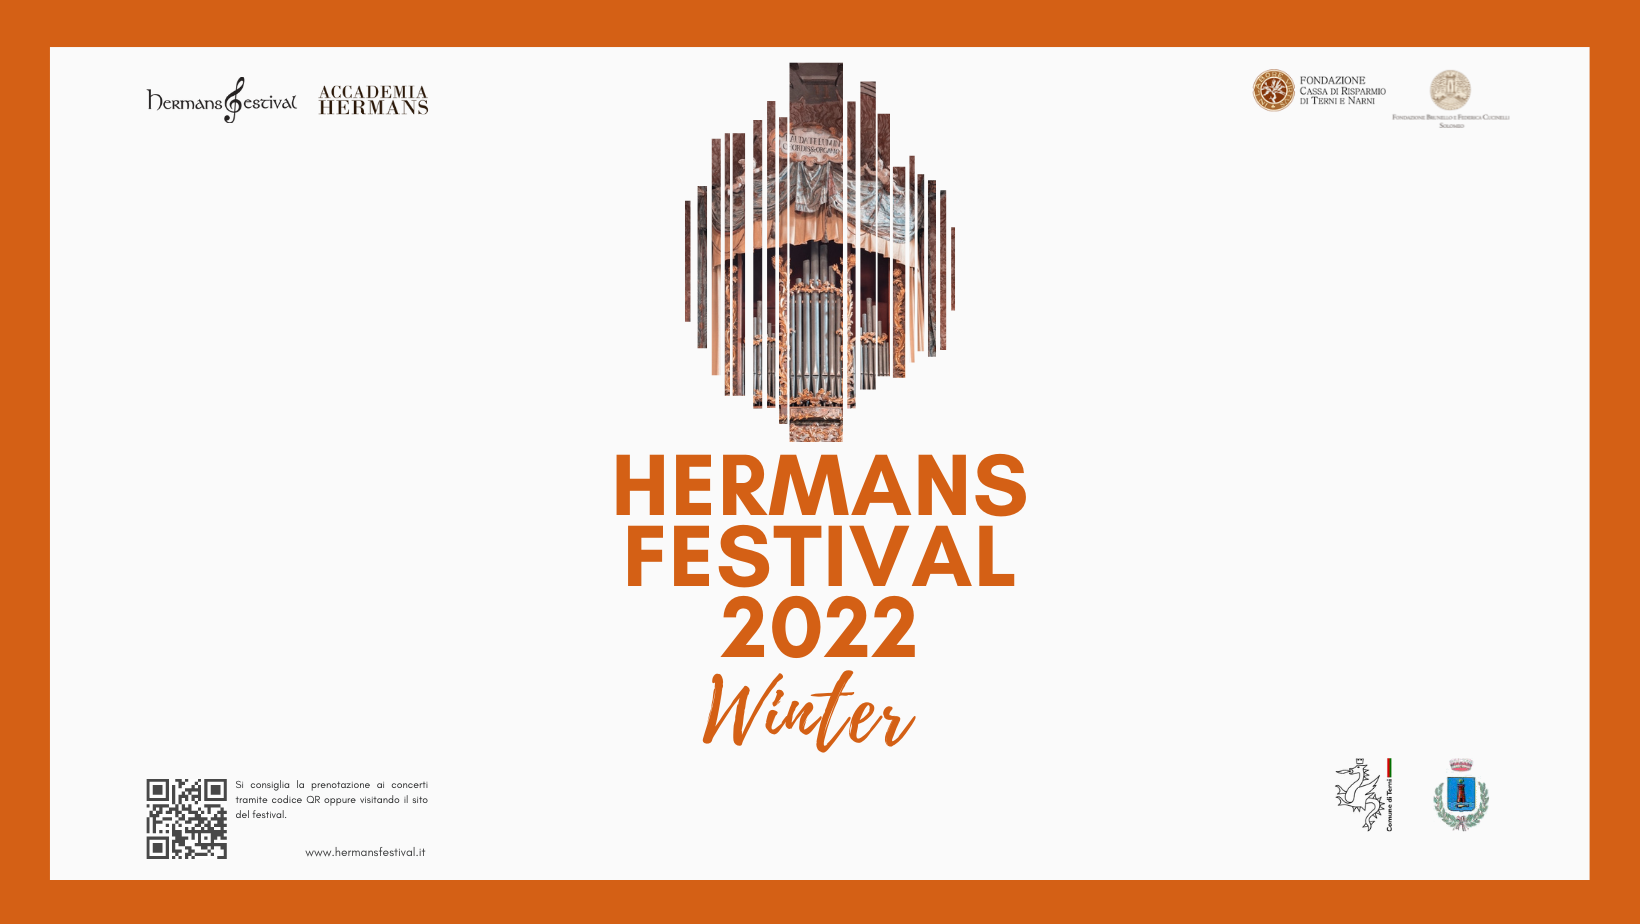 Hermans Festival (Copertina di Facebook)